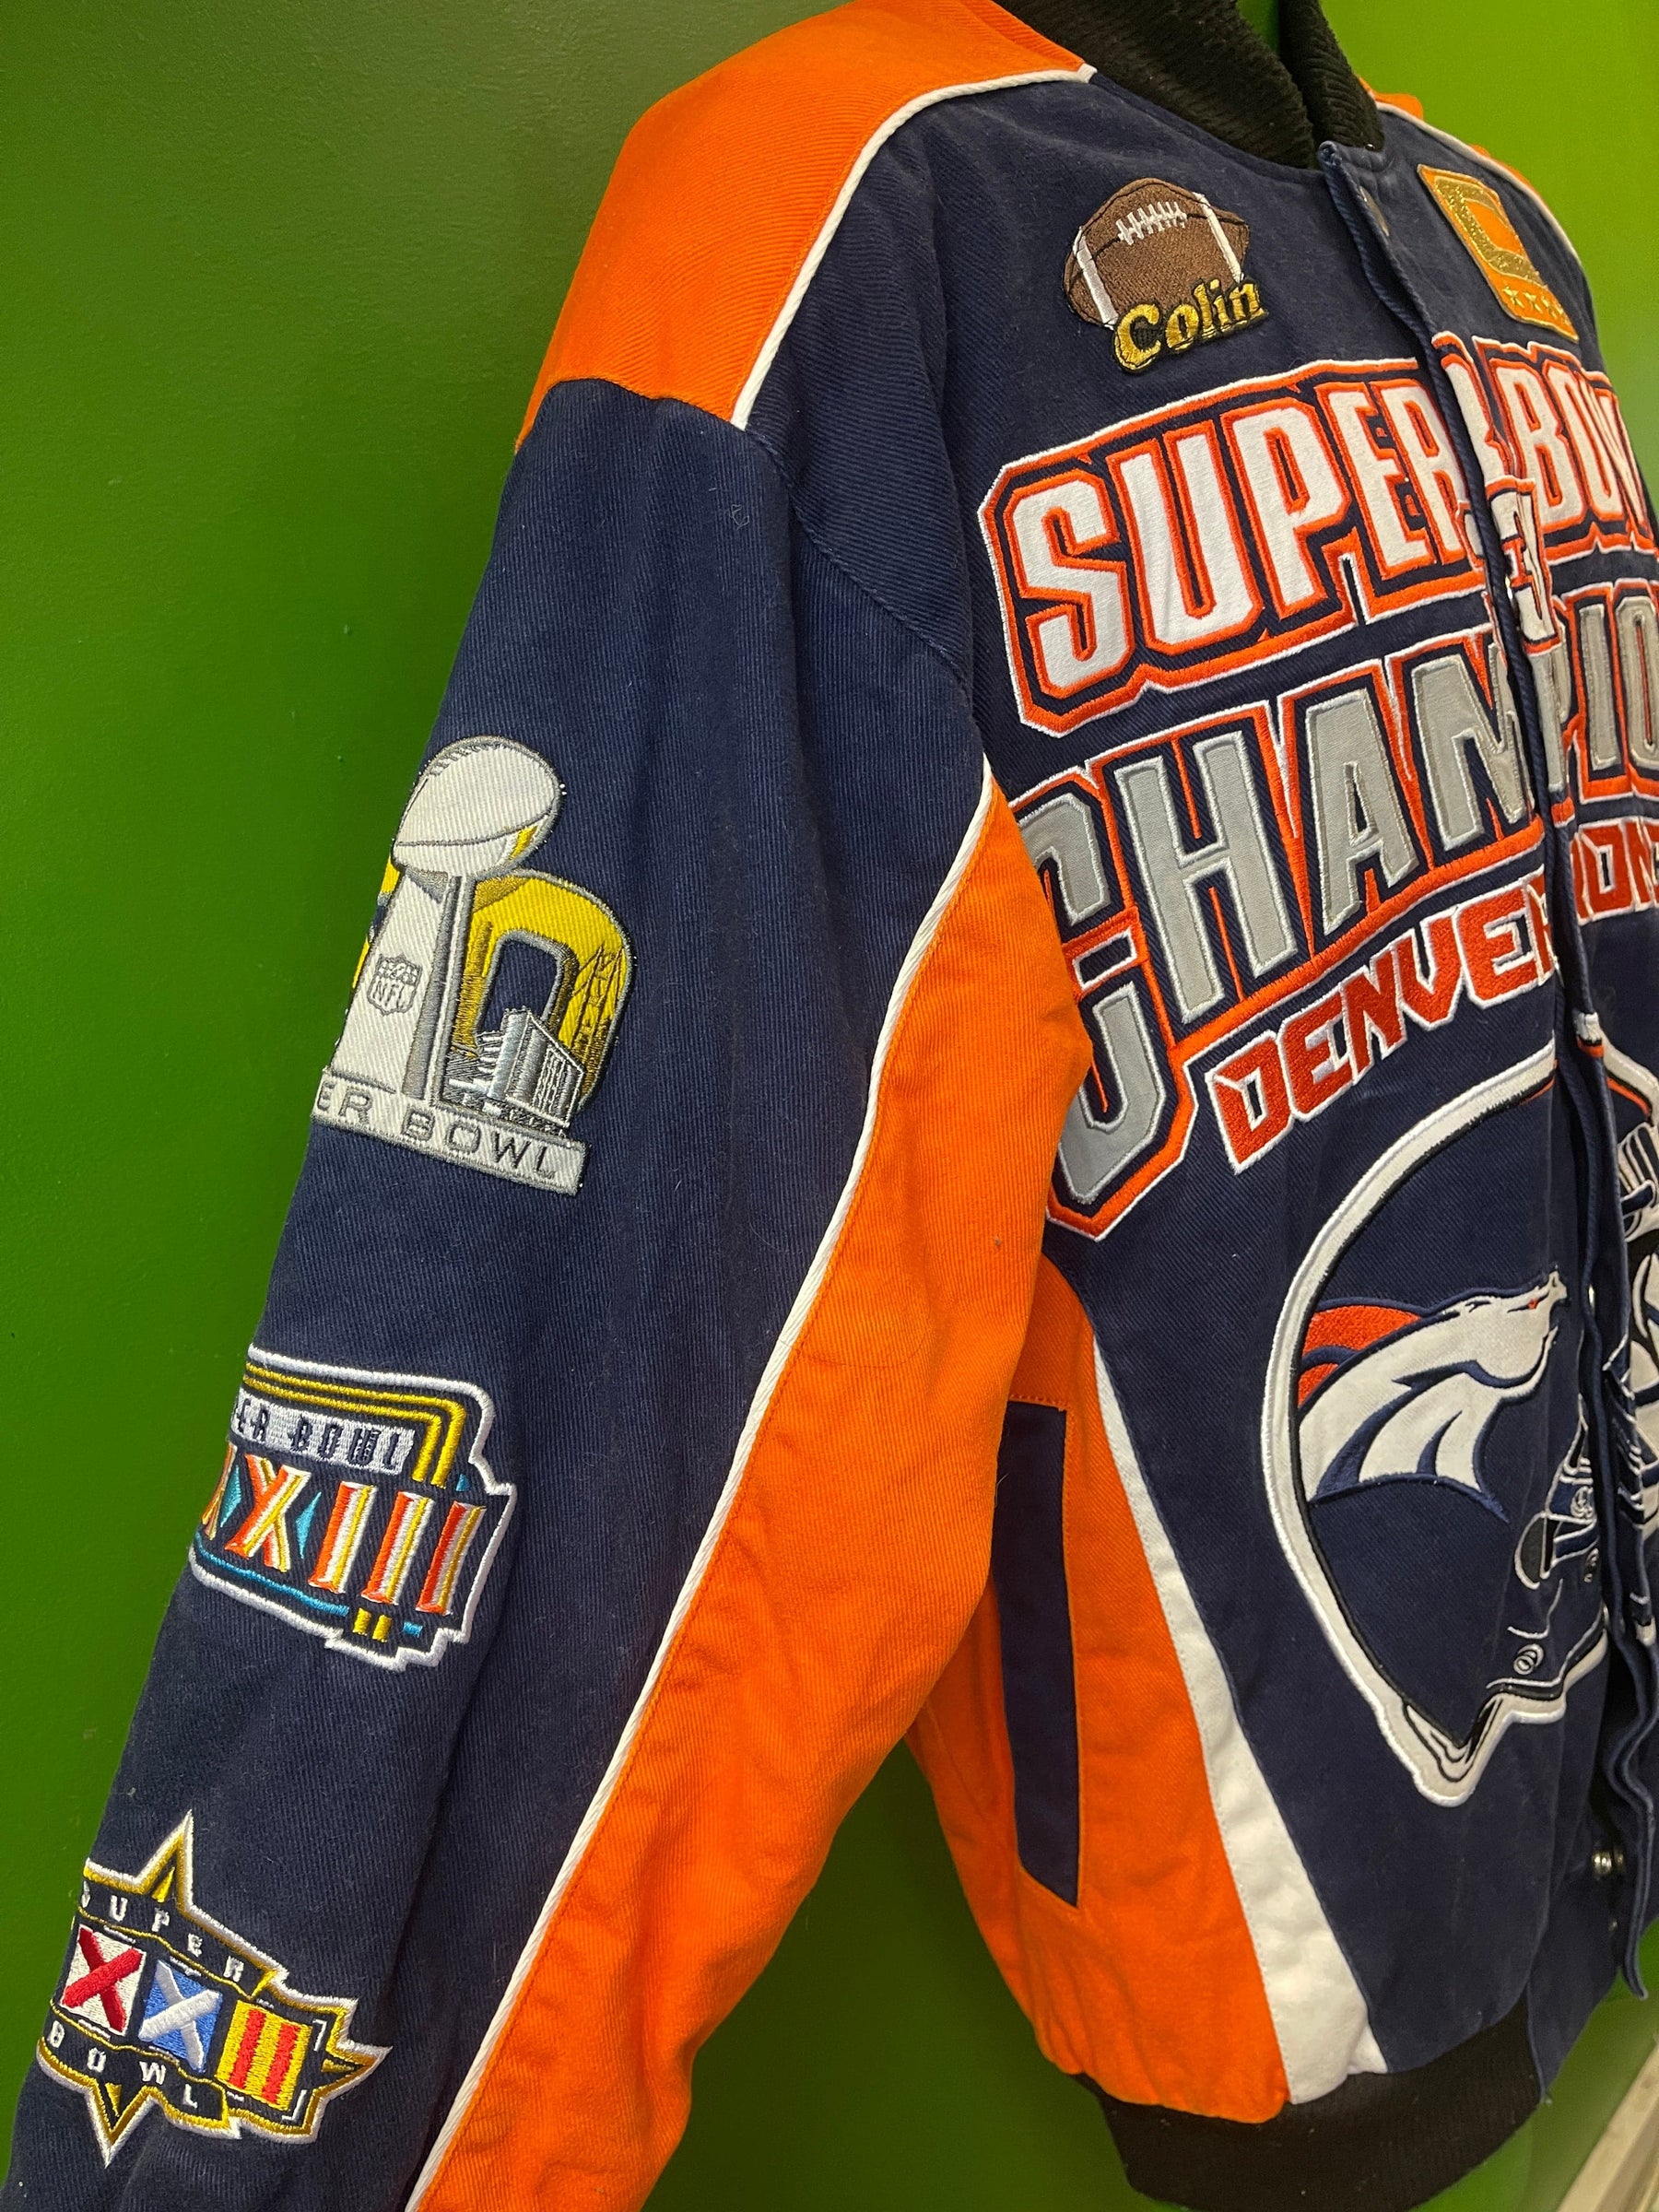 NFL Denver Broncos 3X Super Bowl Champions Canvas Bomber Jacket Coat Men's Small